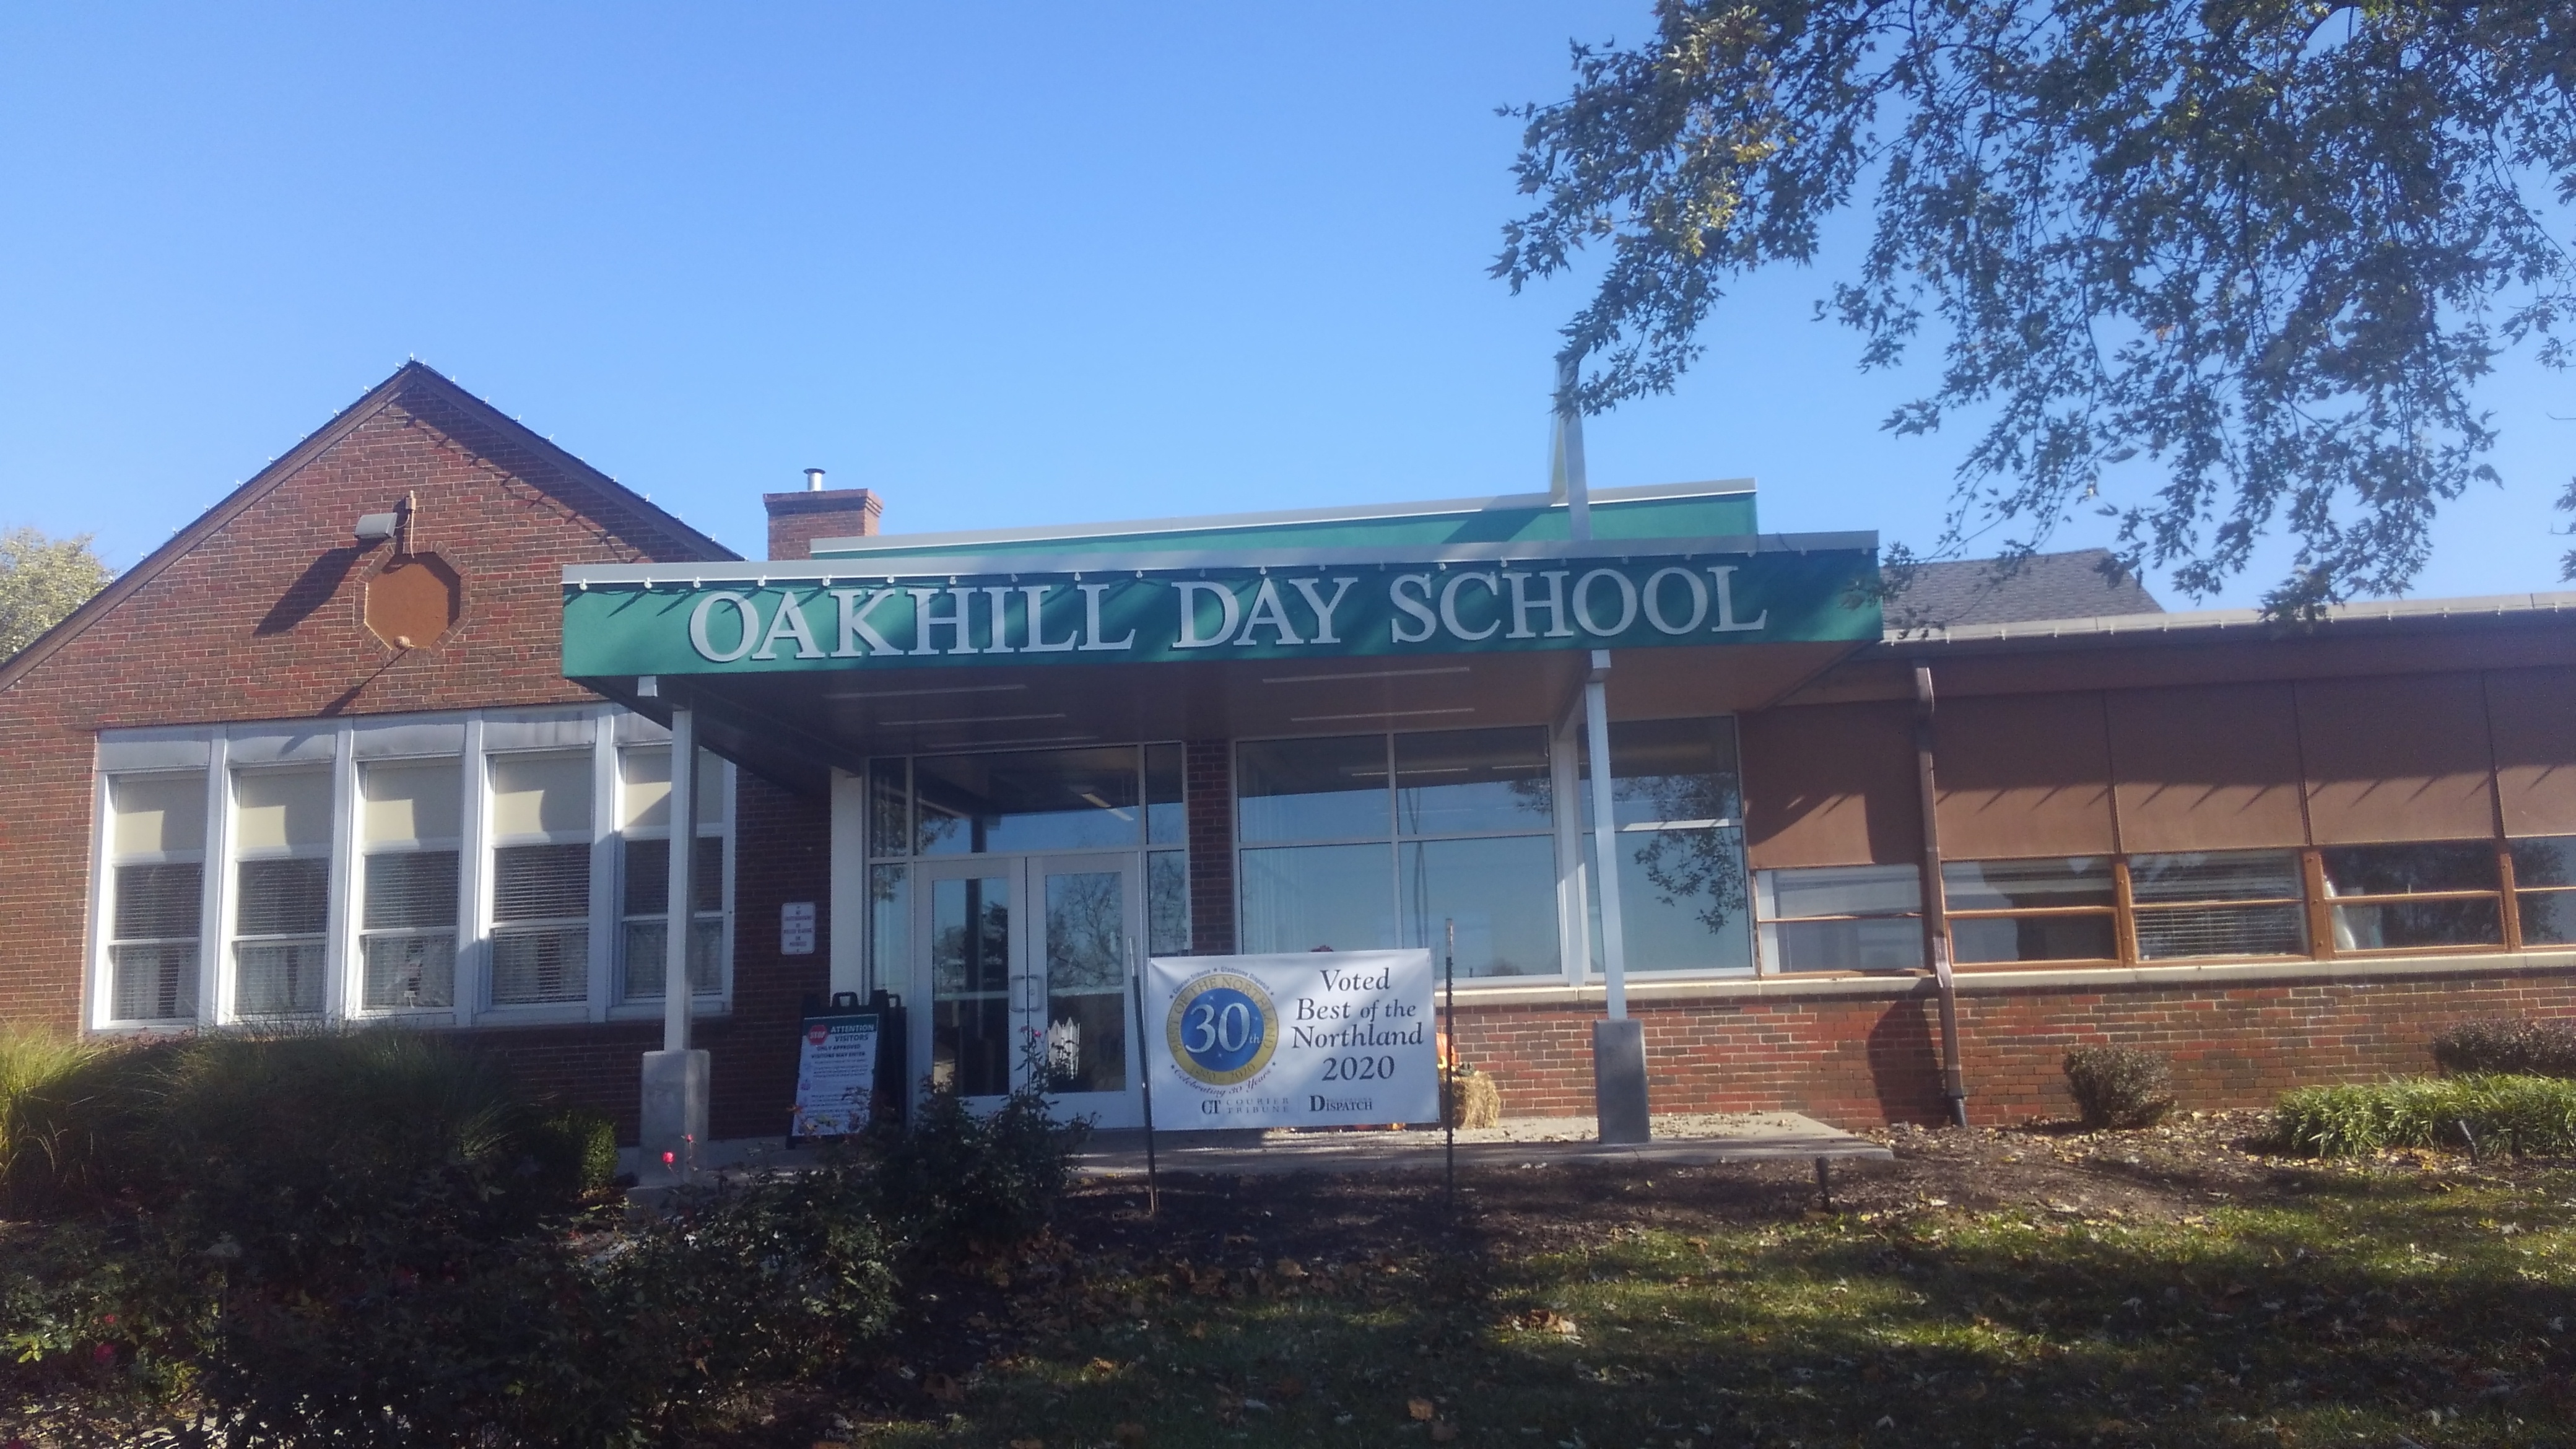 Oakhill Day School